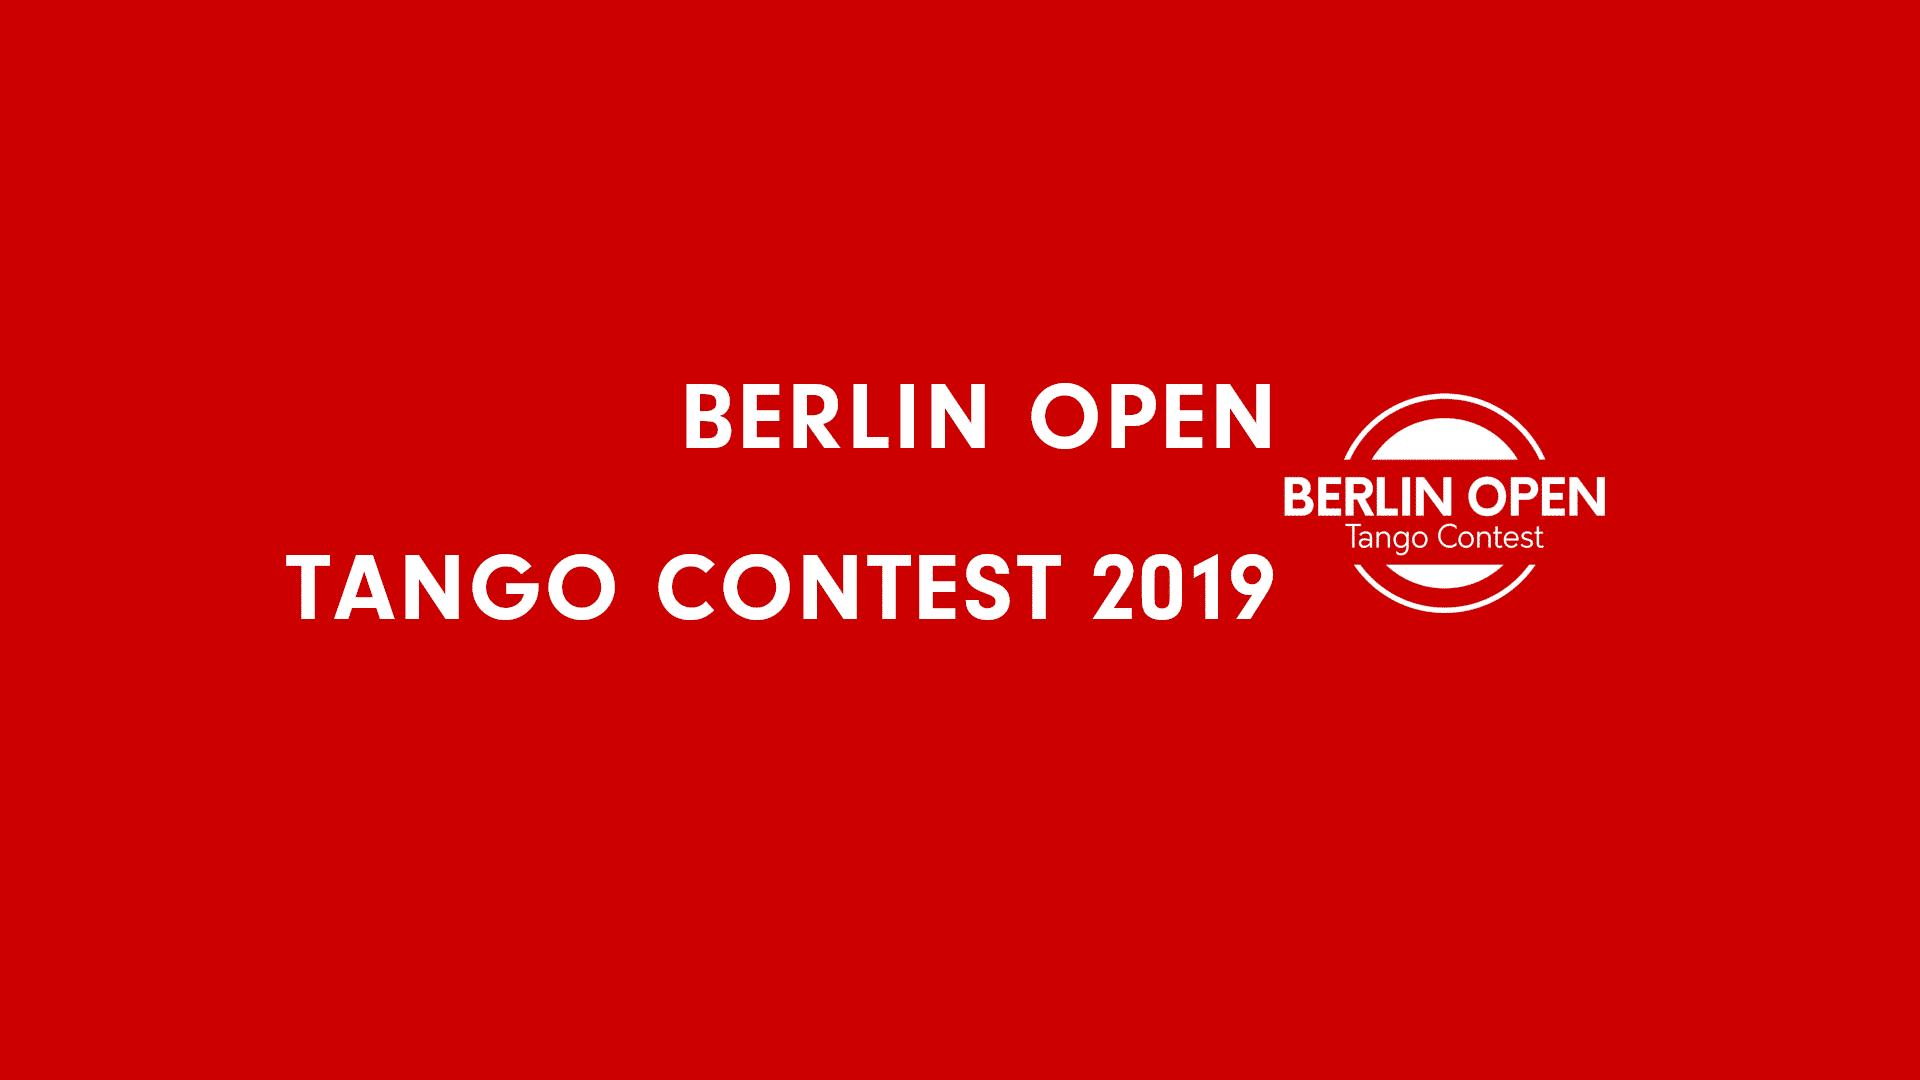 Berlin Open Tango Contest